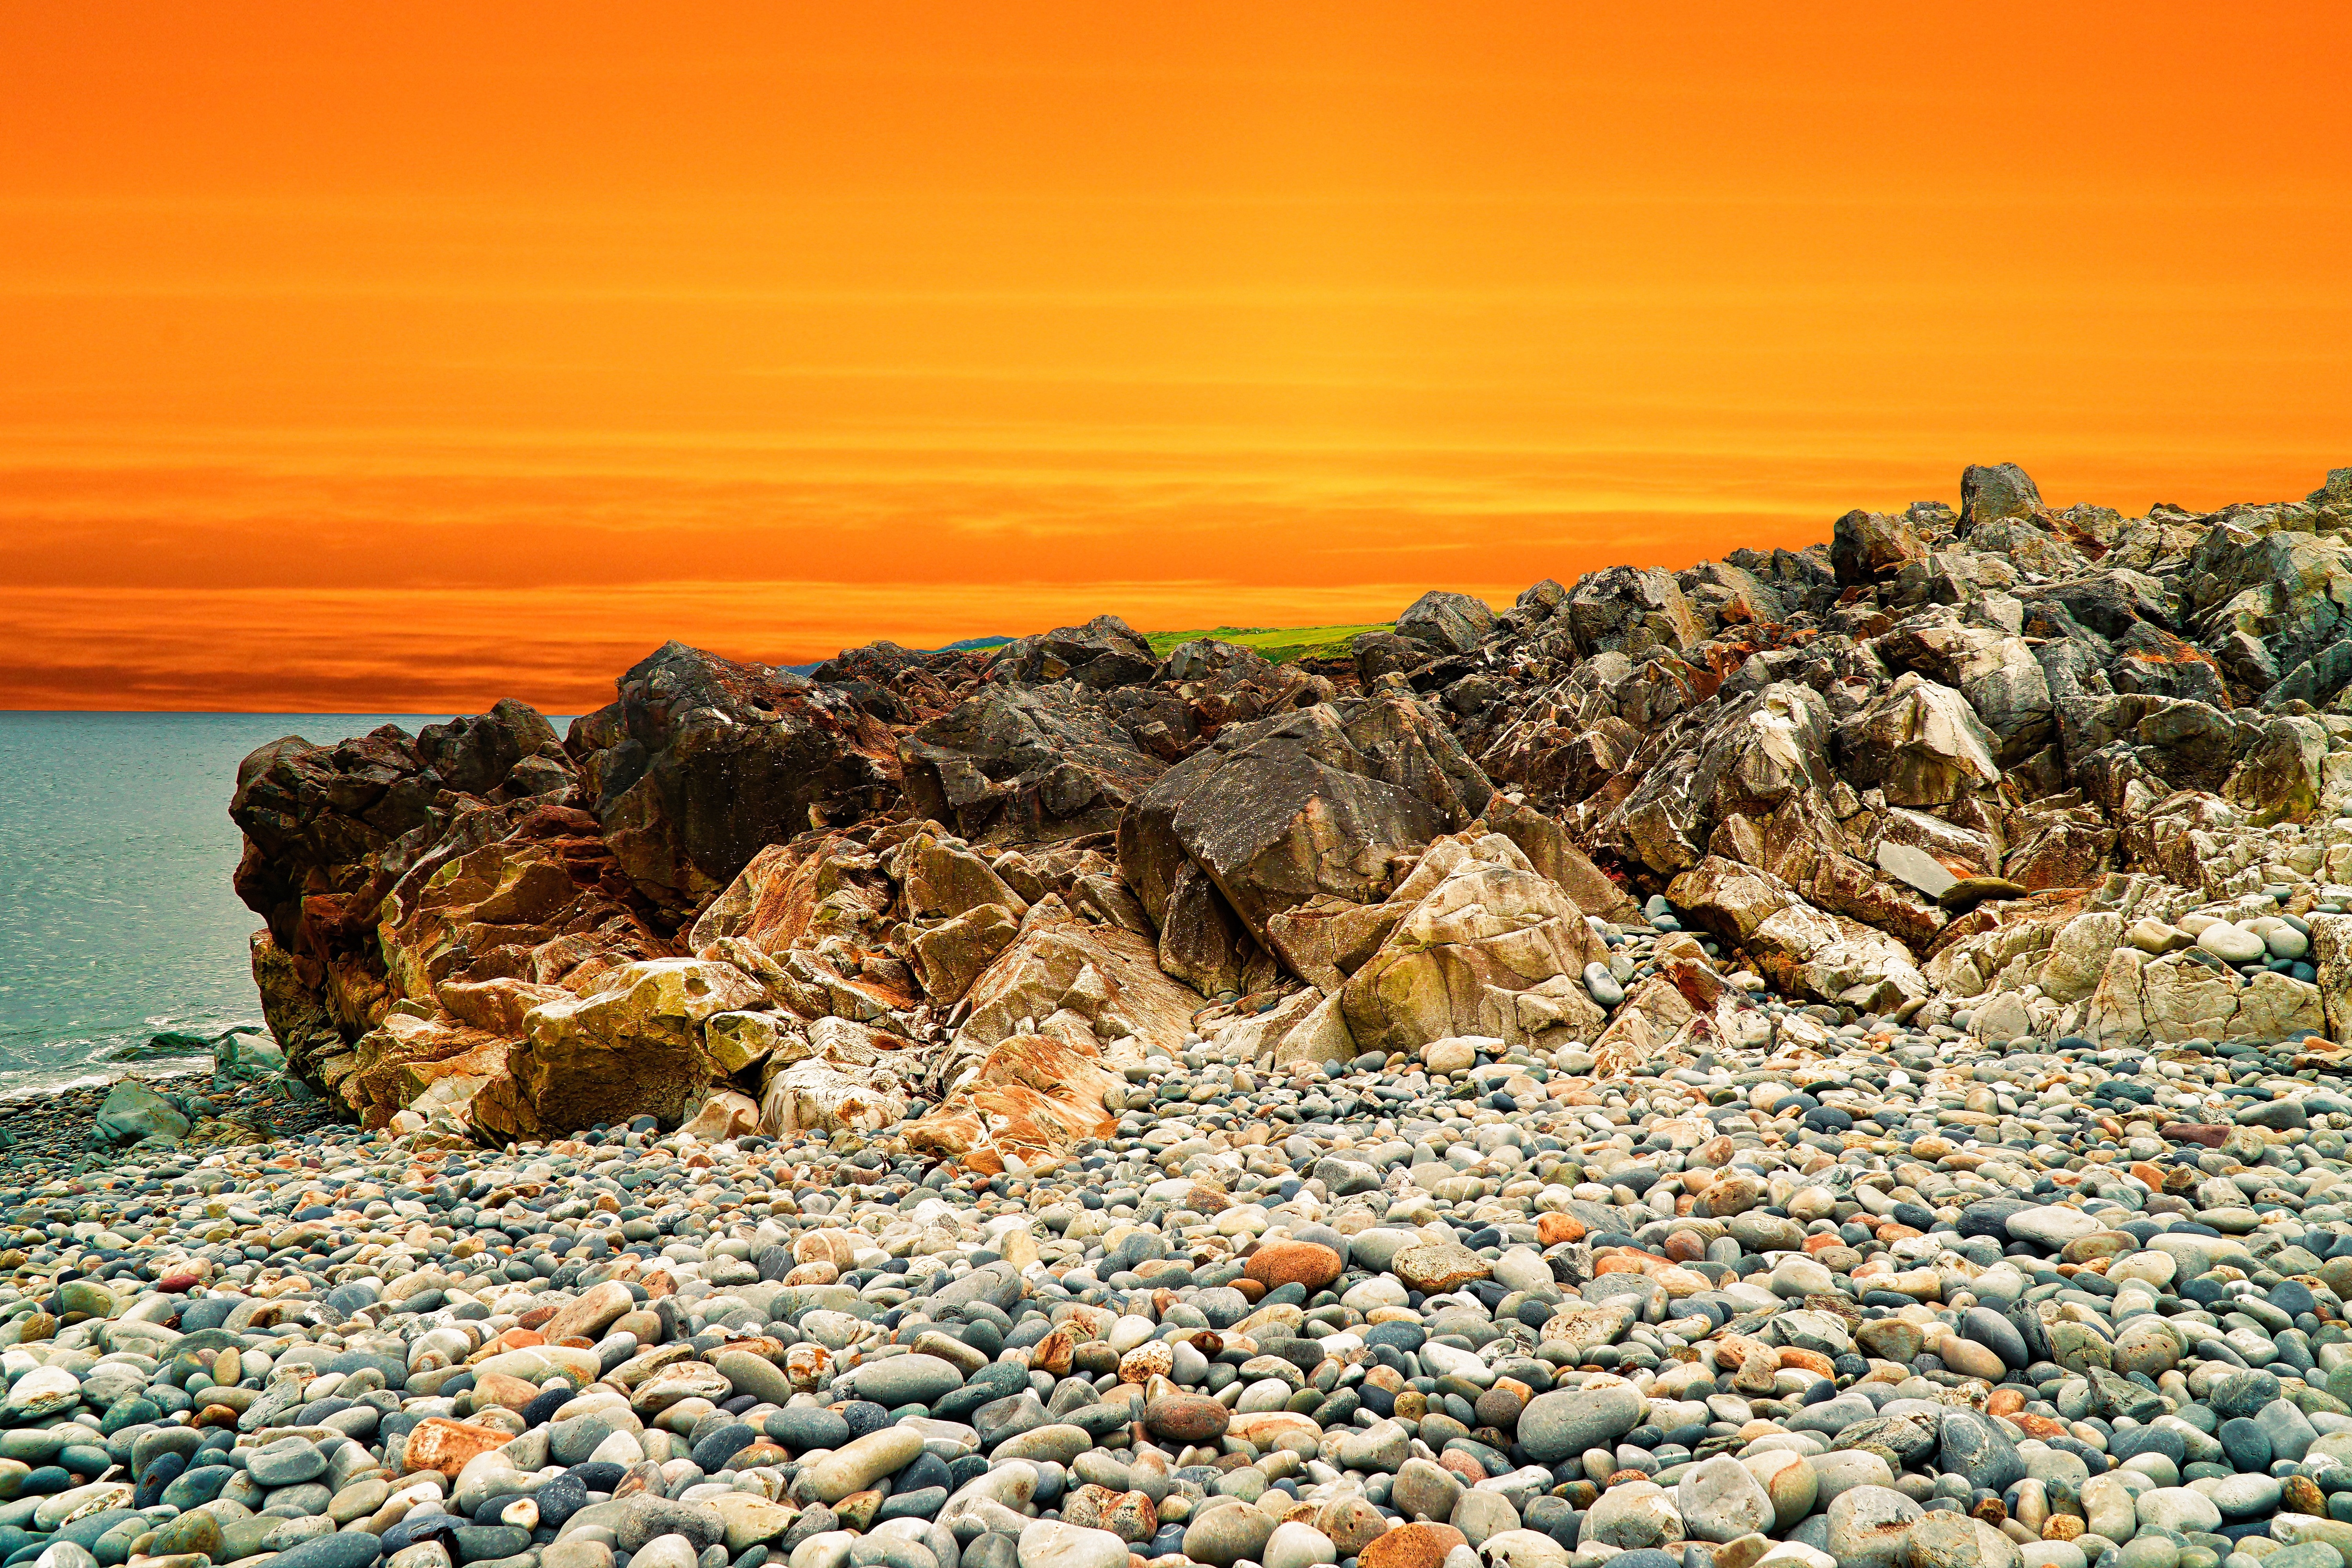 HD wallpaper, Pebbles, Landscape, Rocks, Coastal, Orange Sky, Scenery, Water, 5K, Ocean, Sunset